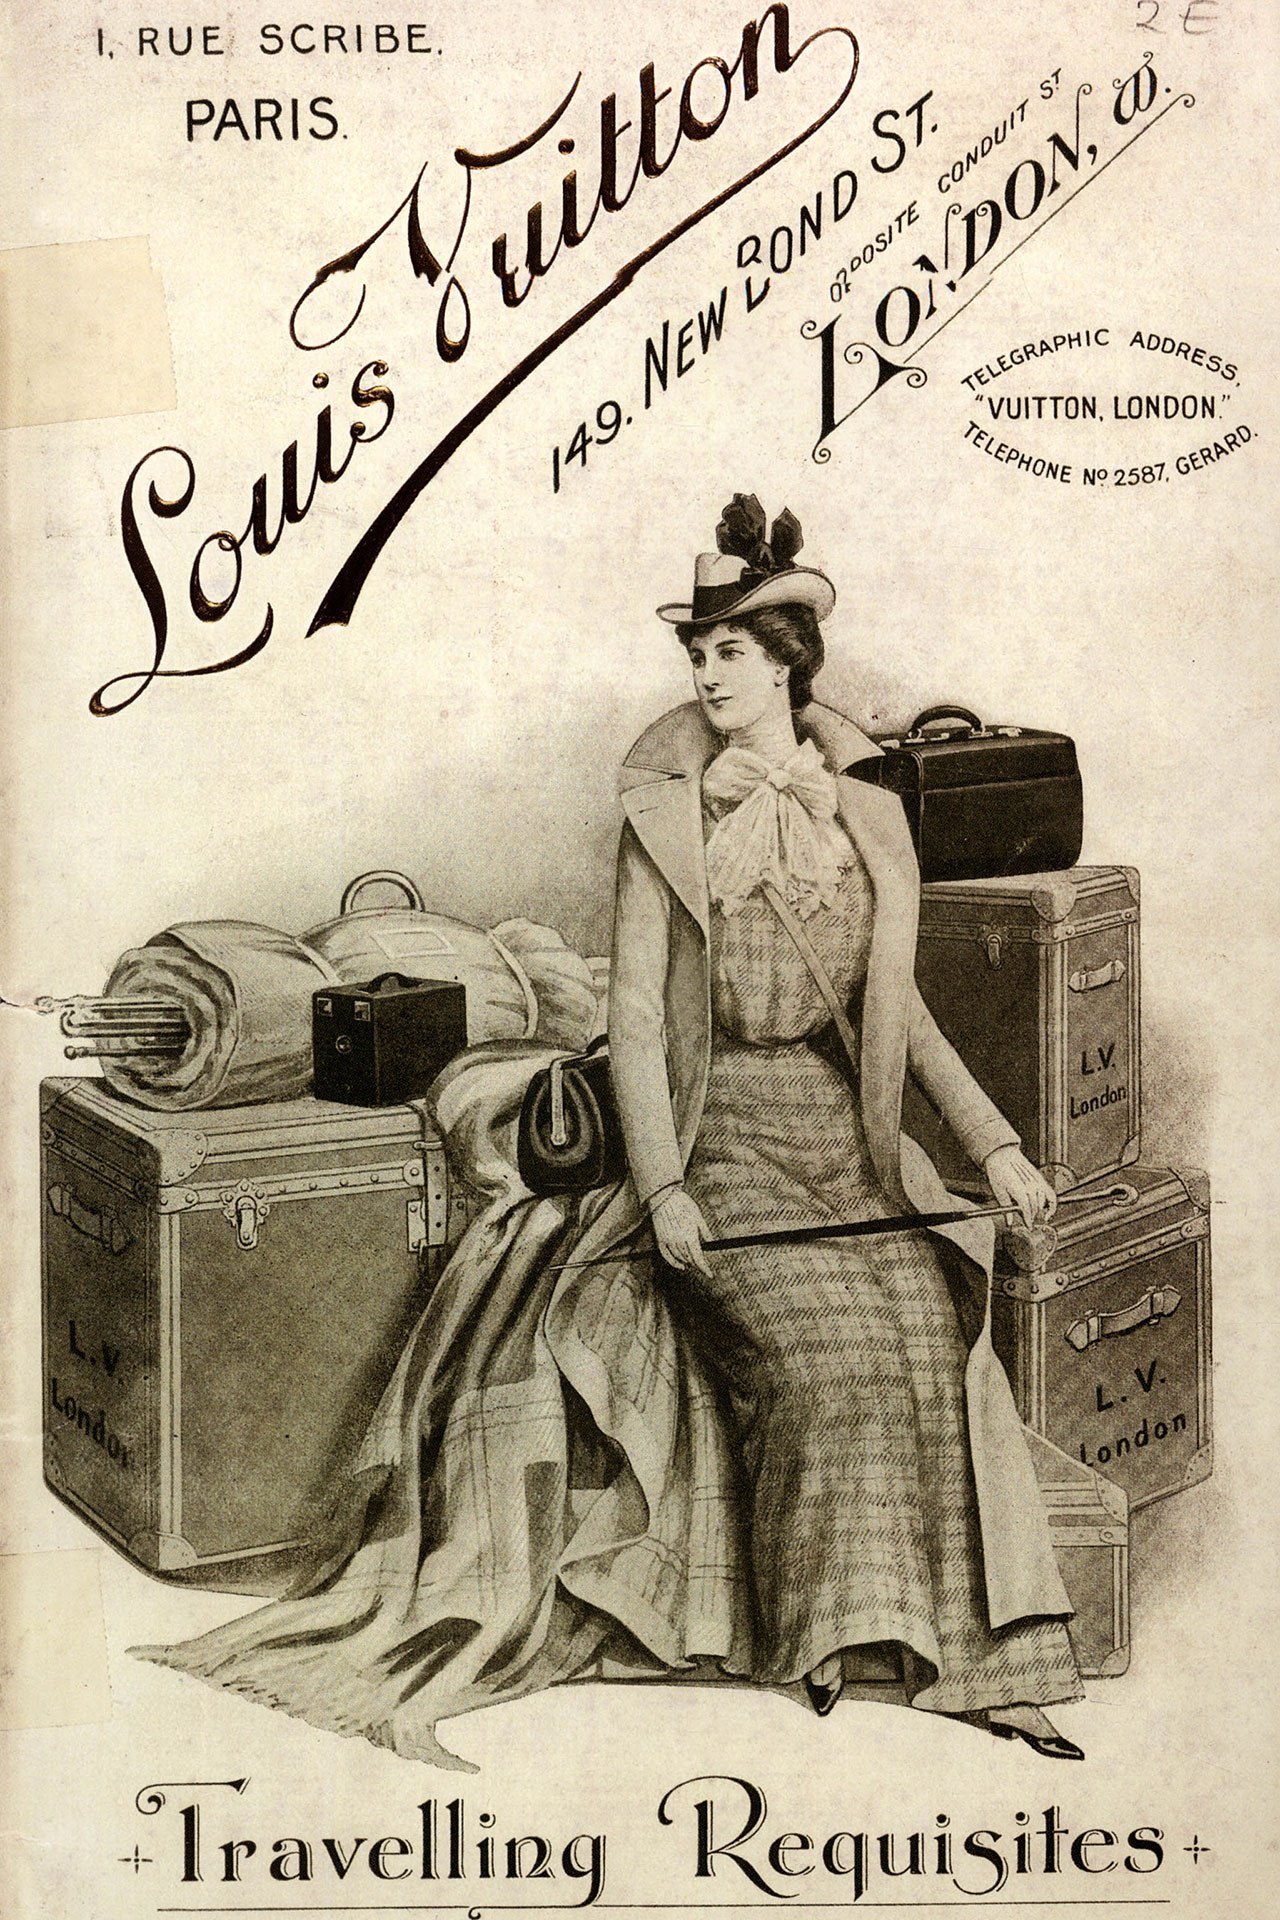 Louis Vuitton Poster Luxury Brand Print French -  Australia